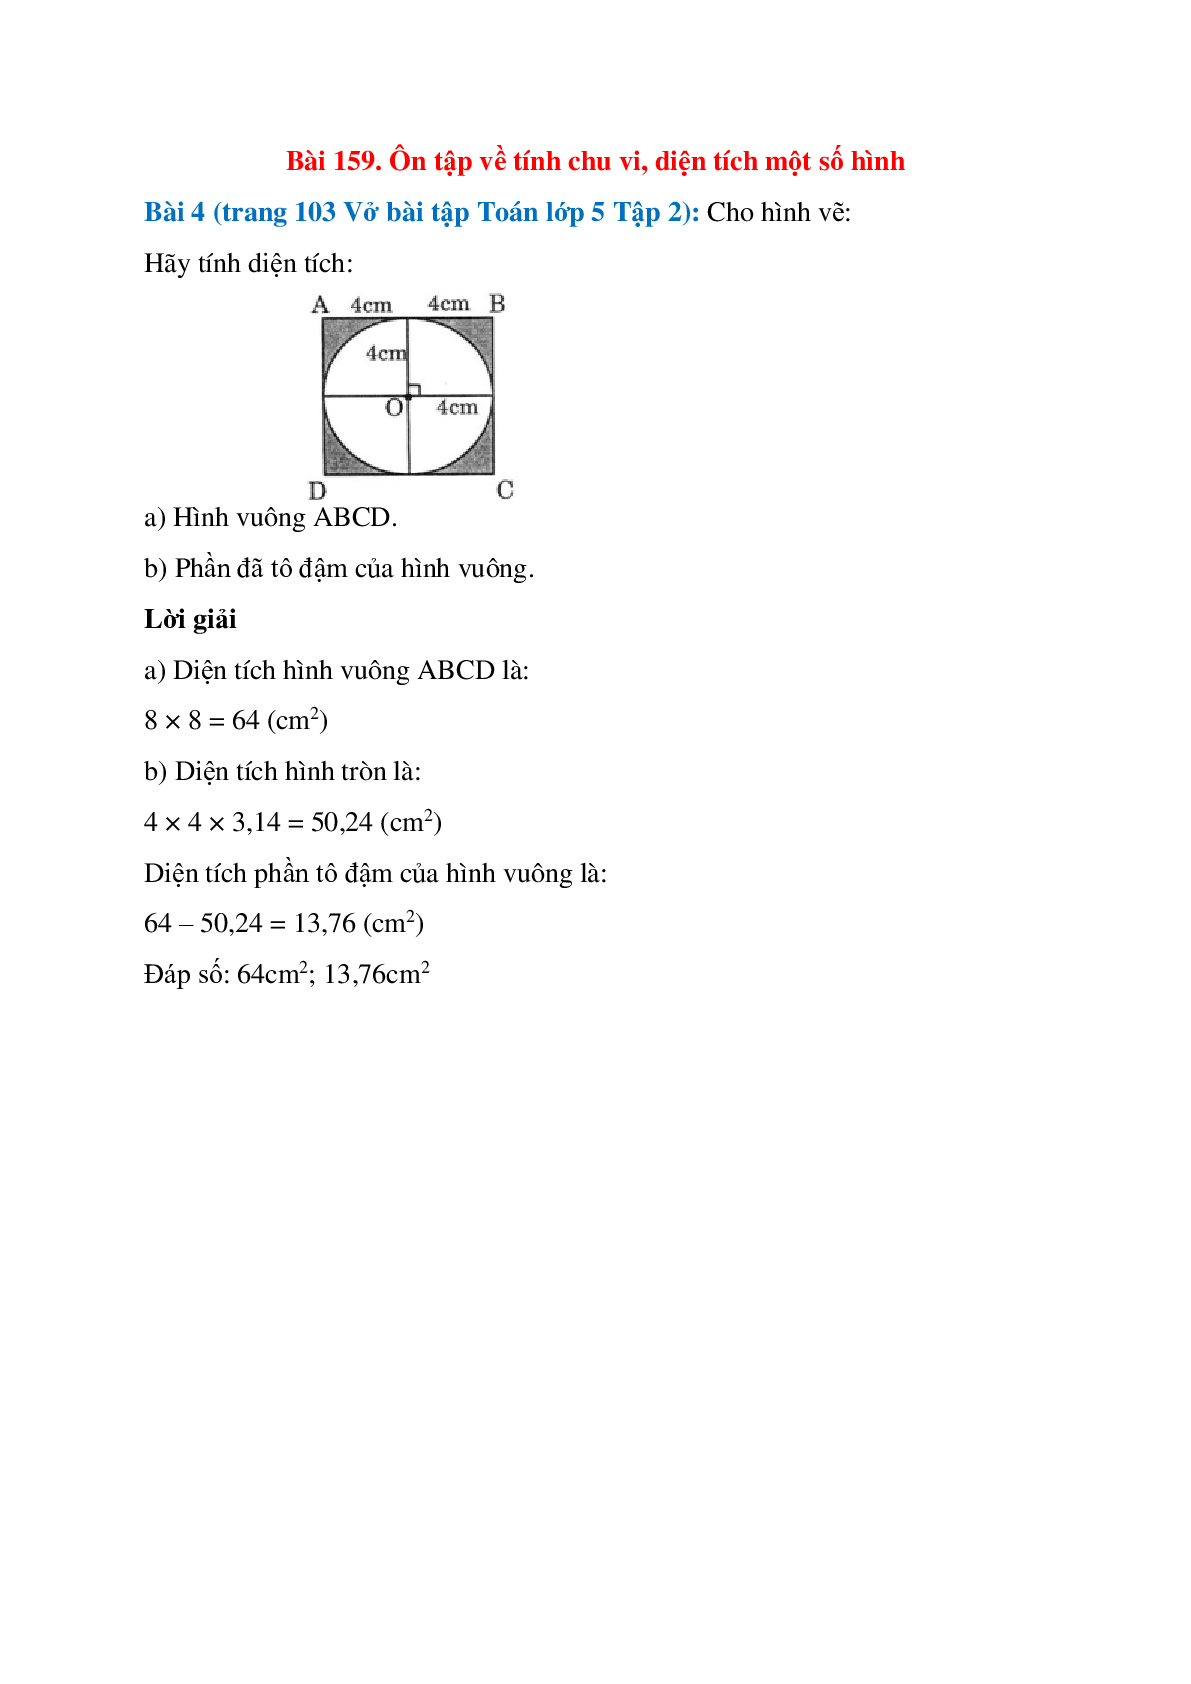 Cho hình vẽ: Hãy tính diện tích: Hình vuông ABCD (trang 1)